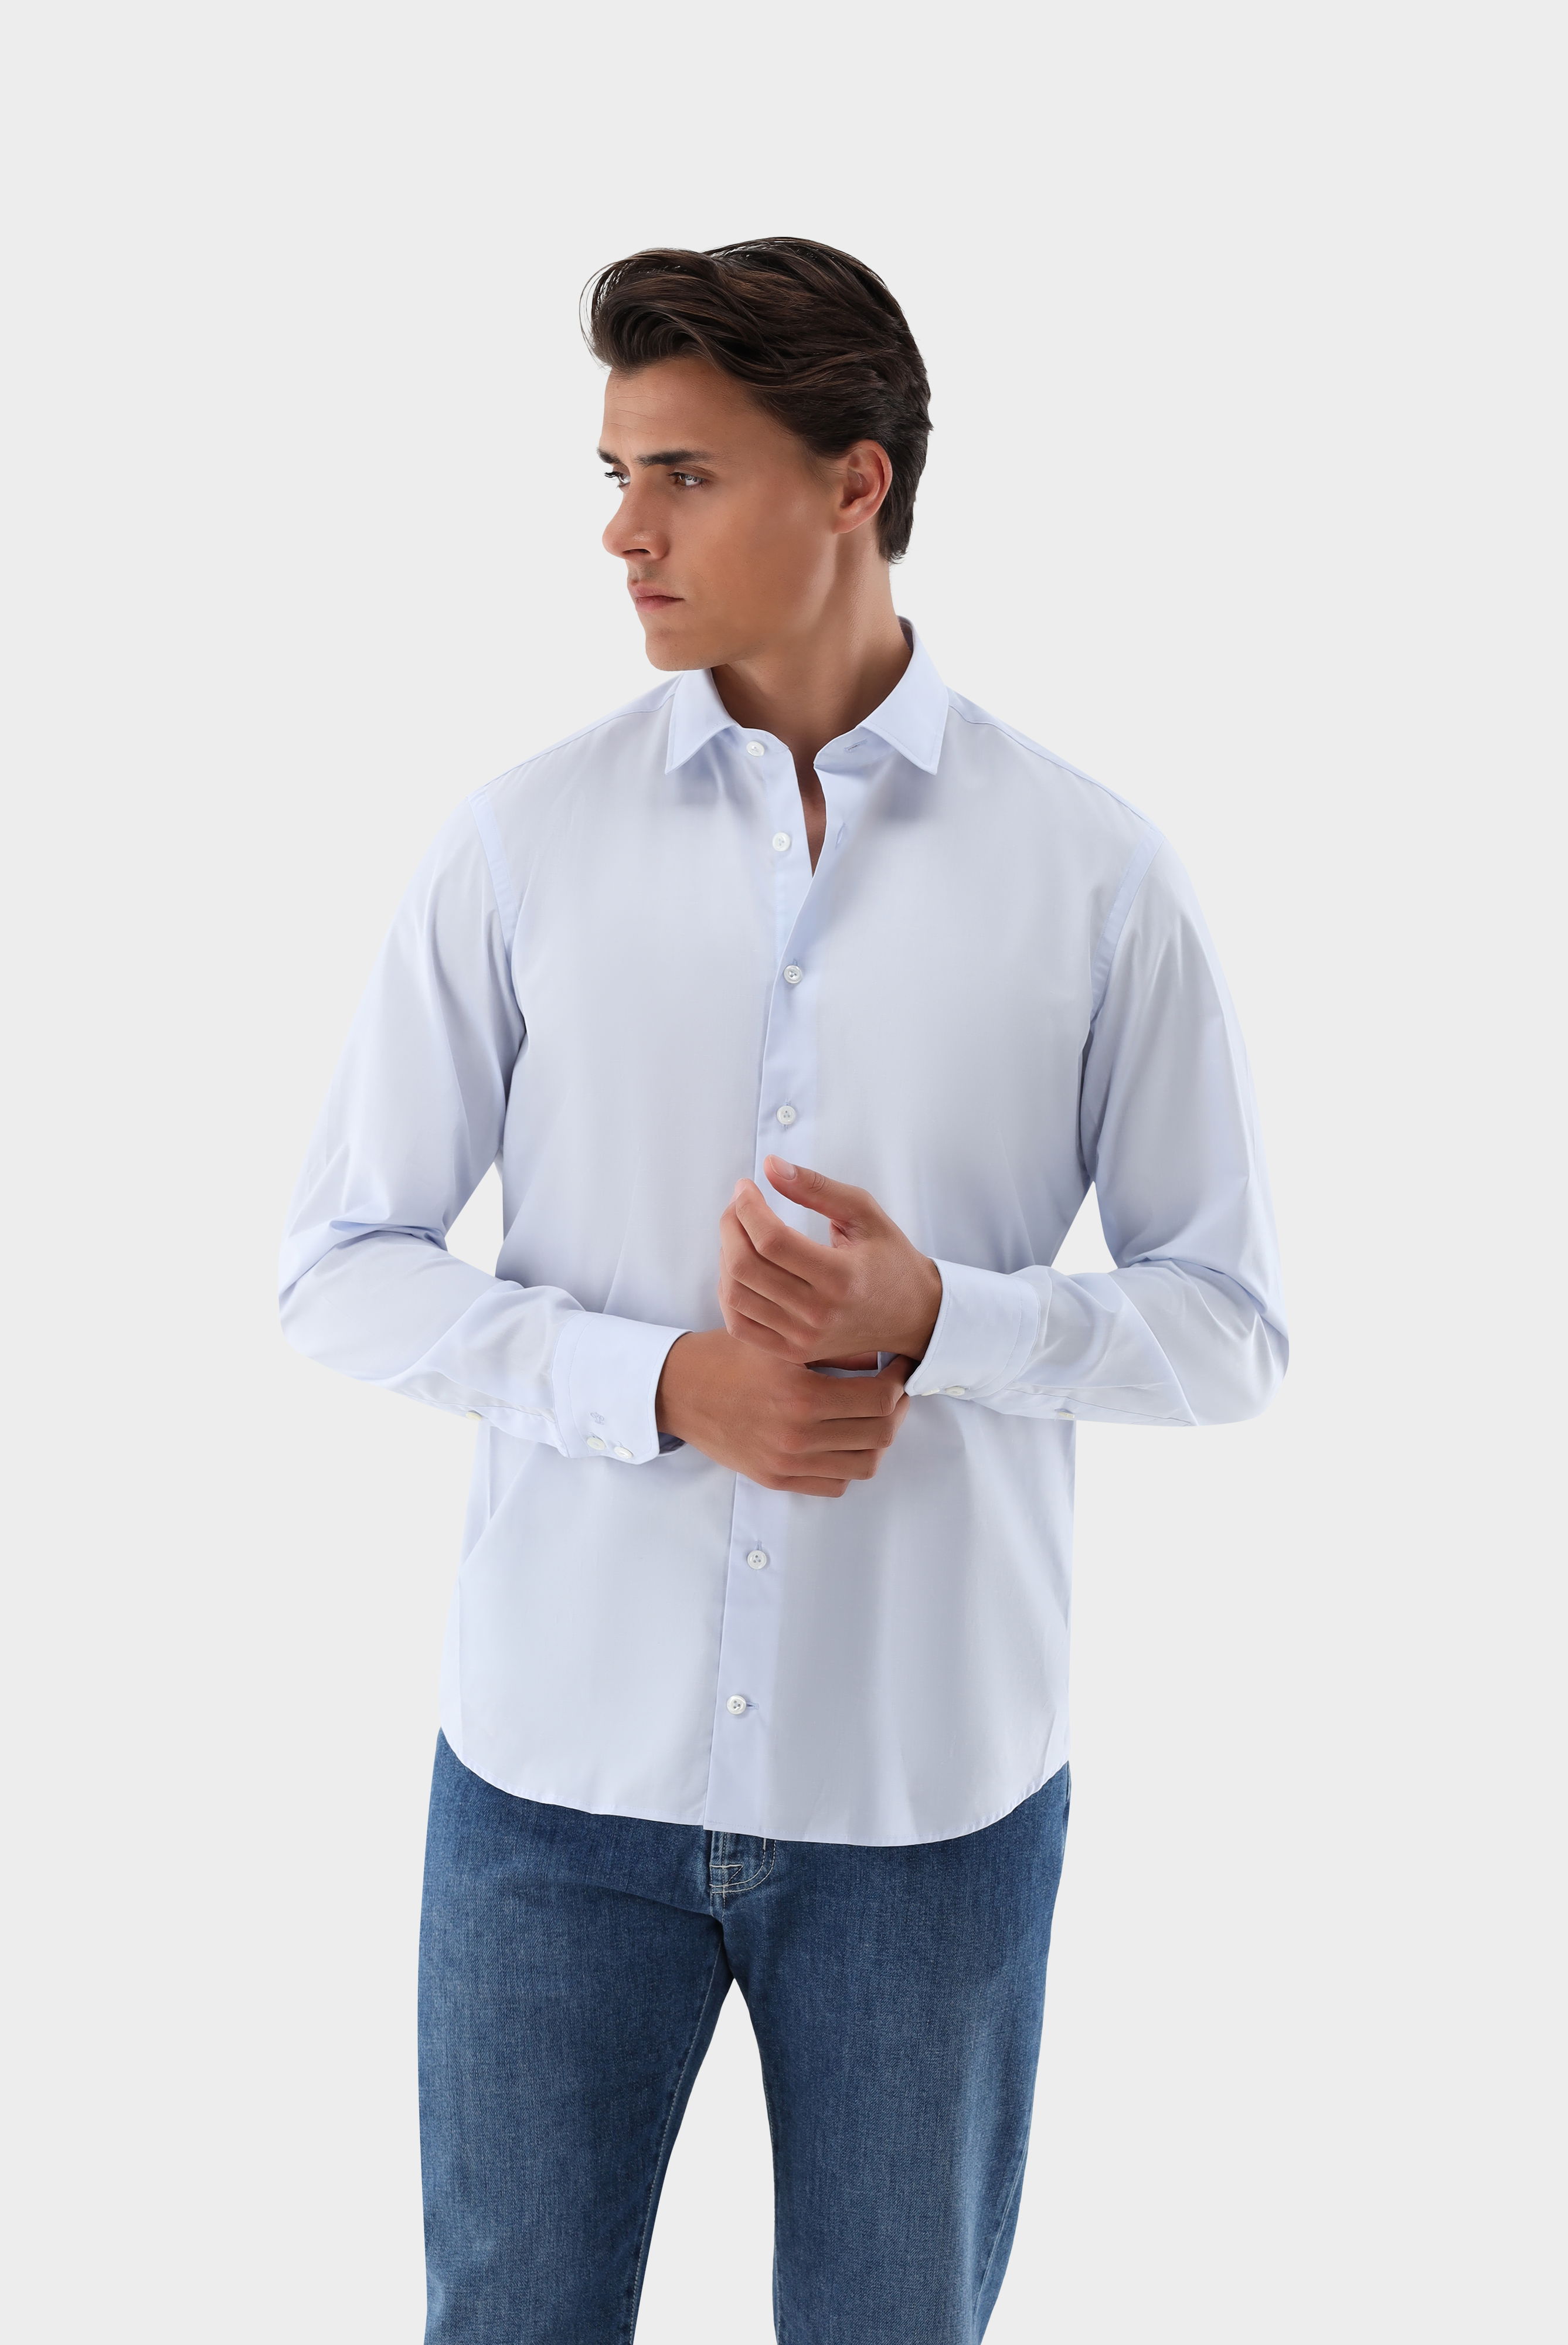 Bügelleichte Hemden+Bügelfreies Hemd Tailor Fit+20.3281.NV.150098.720.41